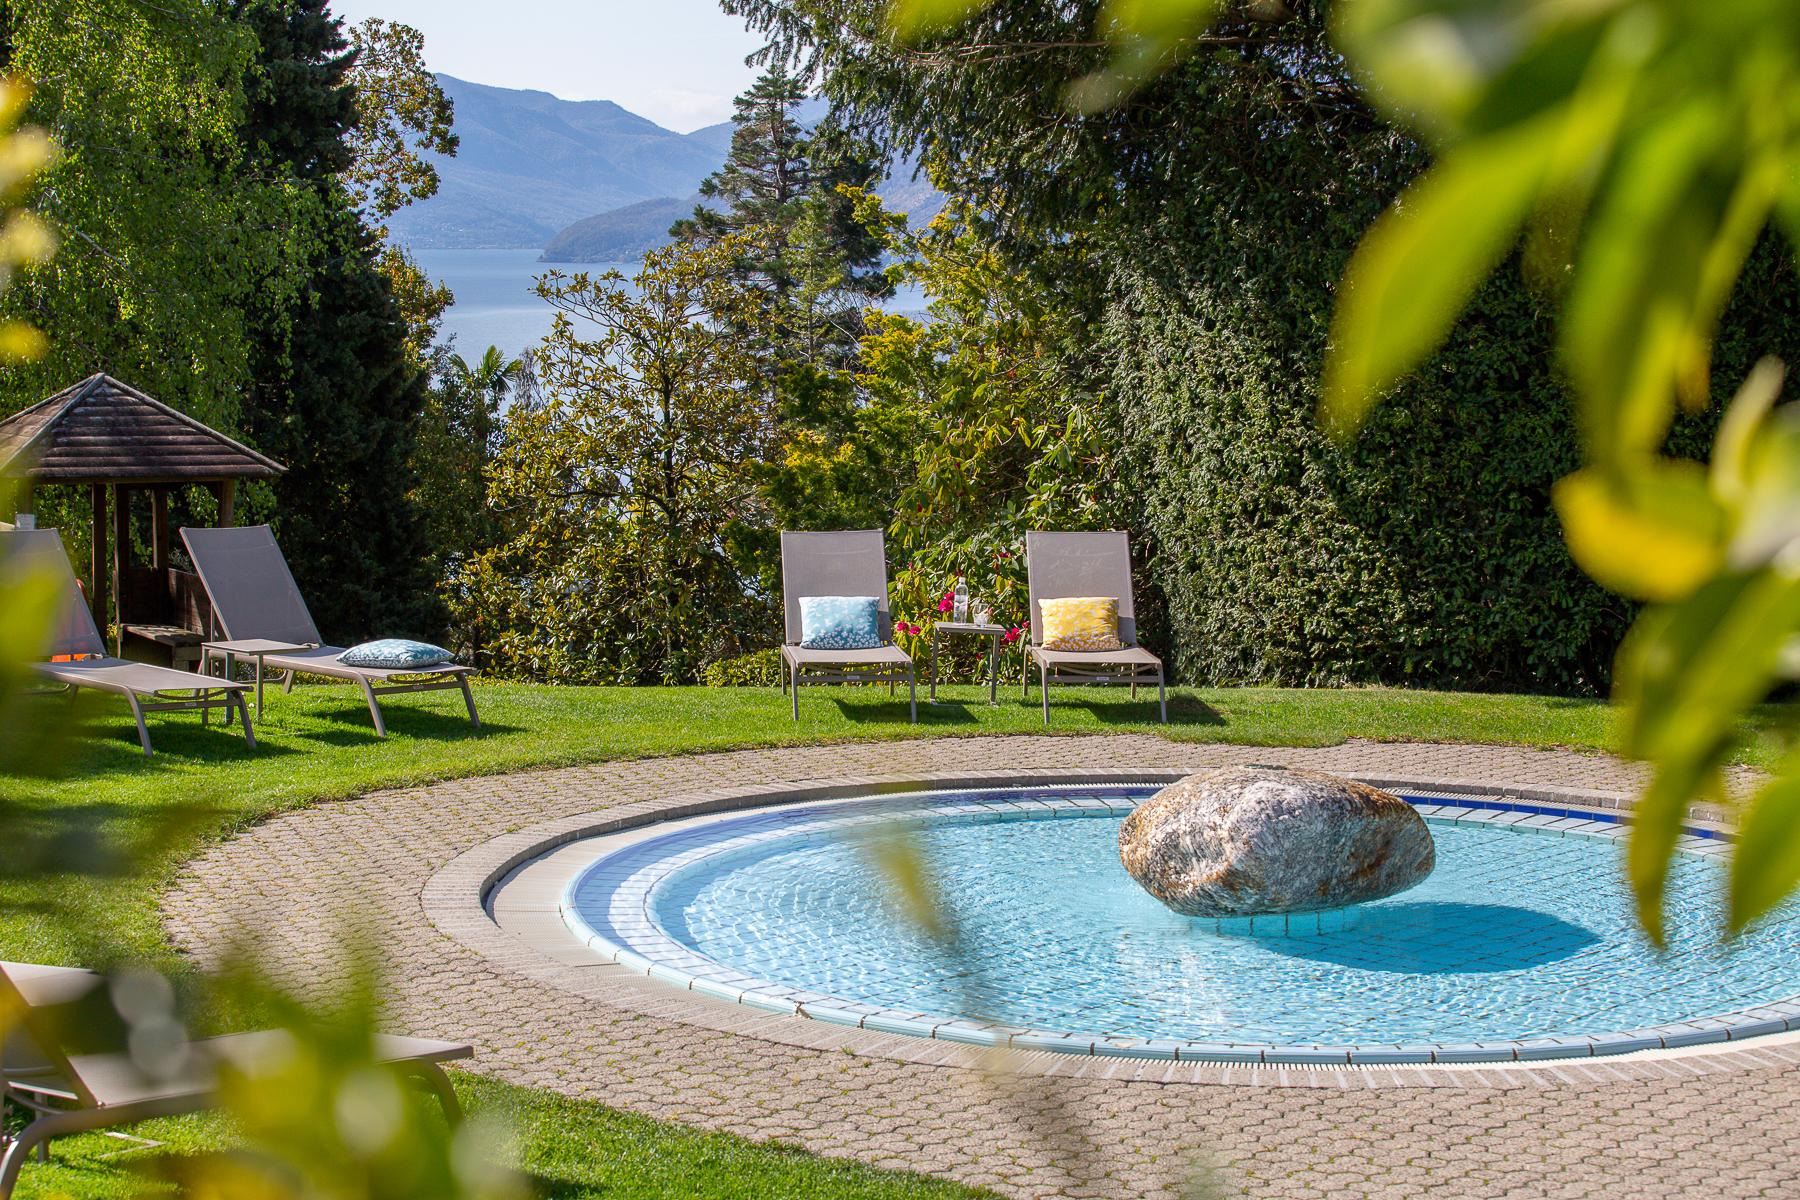 Park-Hotel-Brenscino-experience-Pool-06.jpg